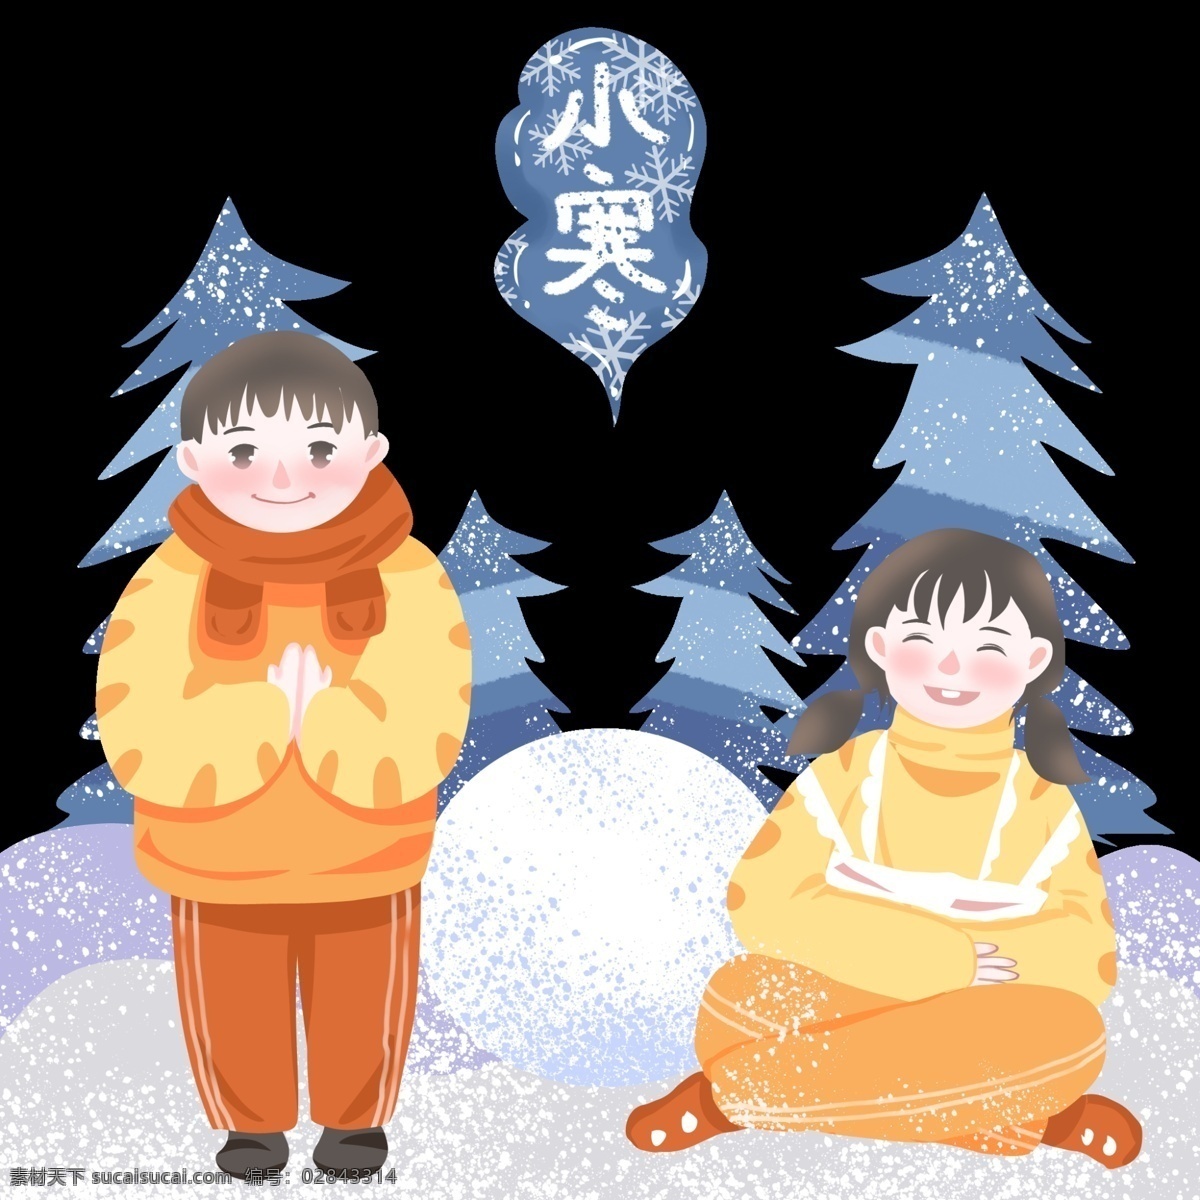 坐地 玩 雪 小寒 节气 图 二十四节气 中国传统 儿童插画 手绘卡通人物 冬季风景 暖黄色 冷调植物